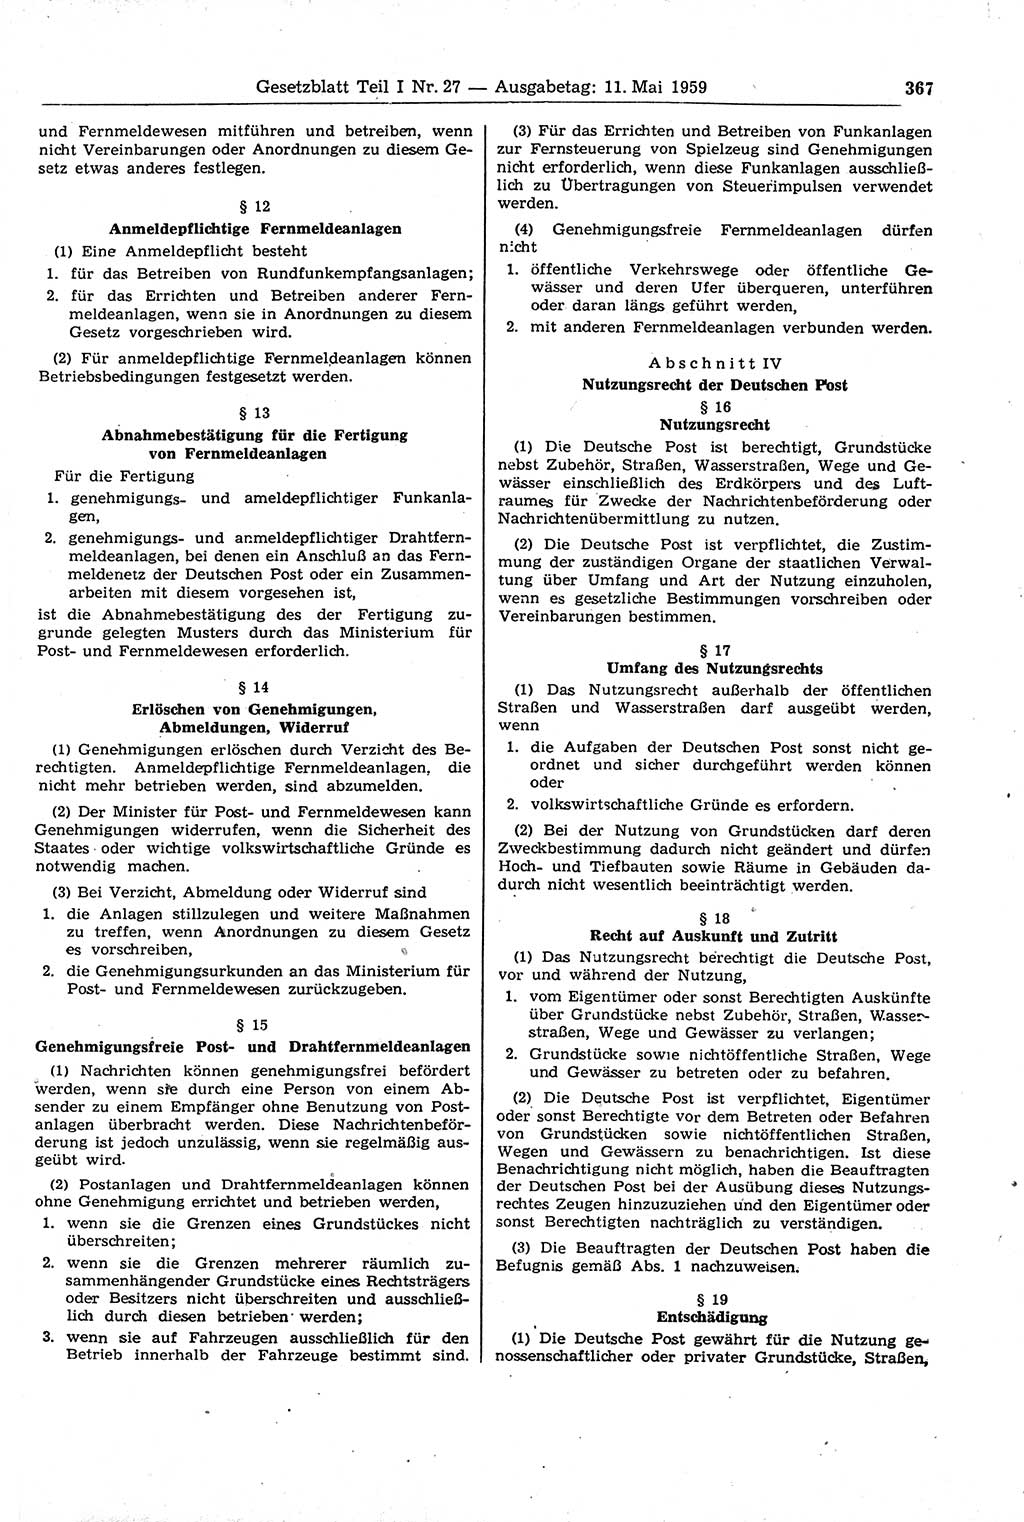 Gesetzblatt (GBl.) der Deutschen Demokratischen Republik (DDR) Teil Ⅰ 1959, Seite 367 (GBl. DDR Ⅰ 1959, S. 367)